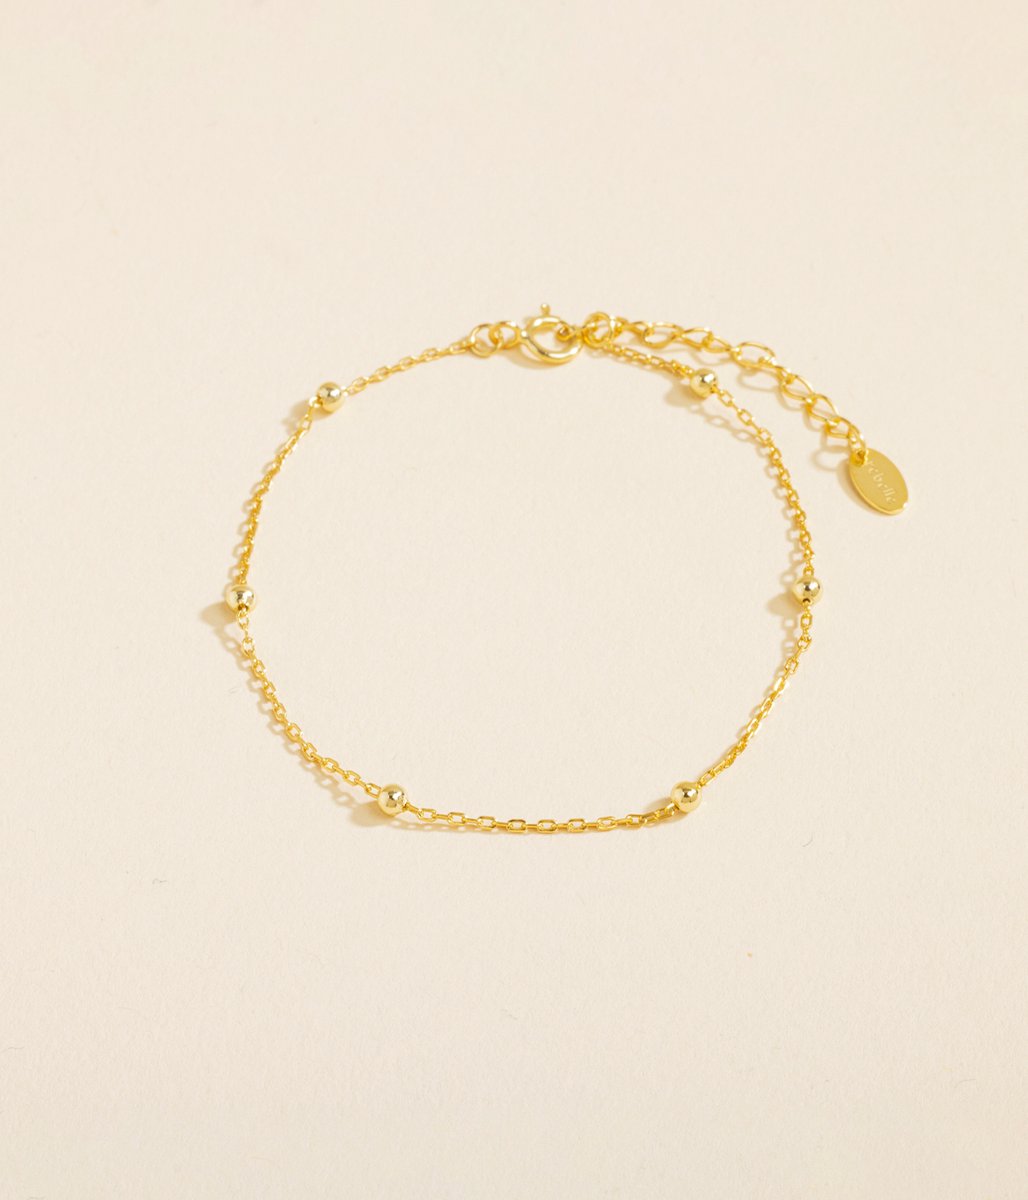 Rebelle Amsterdam - Armband Goud - Gouden Armband - Sieraden Vrouw - Verguld - Armband Dames - Armband Met Bedels - 925 Sterling Zilver